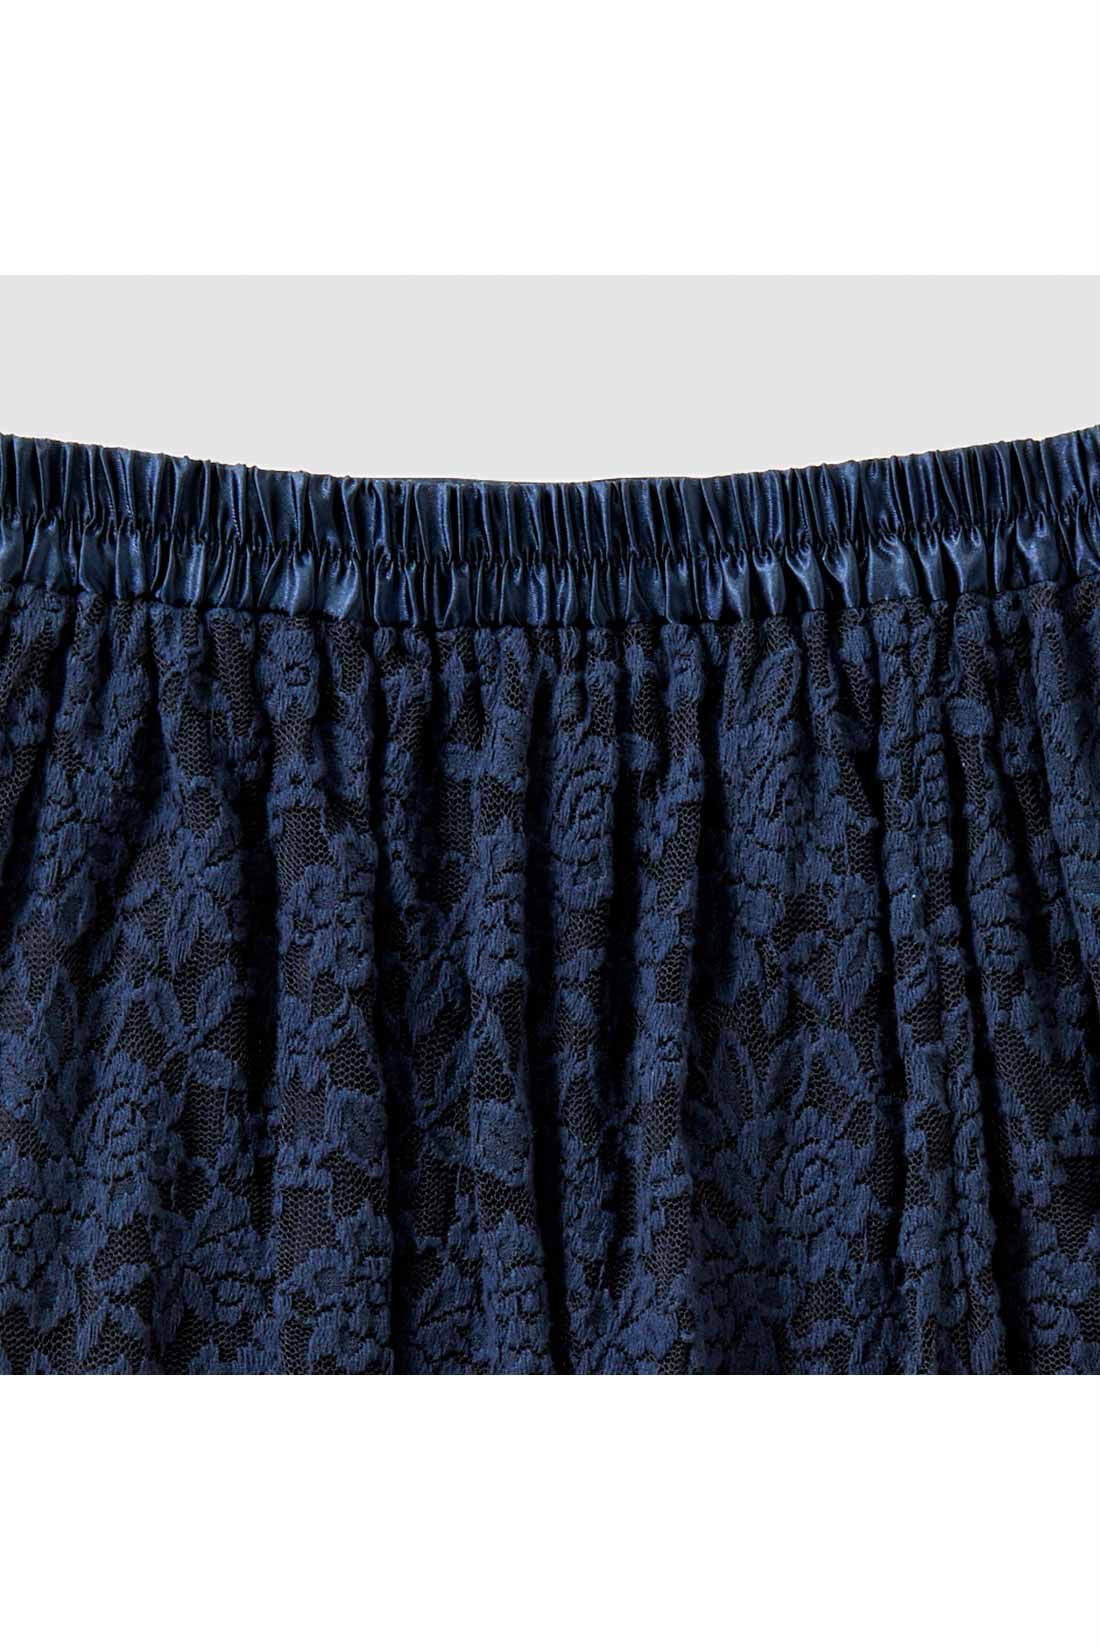 IEDIT|IEDIT[イディット]　帯電防止インナーがうれしい 起毛レーススカート〈ネイビー〉|ウエストわきから後ろゴム仕様でらくちん。 ※お届けするカラーとは異なります。